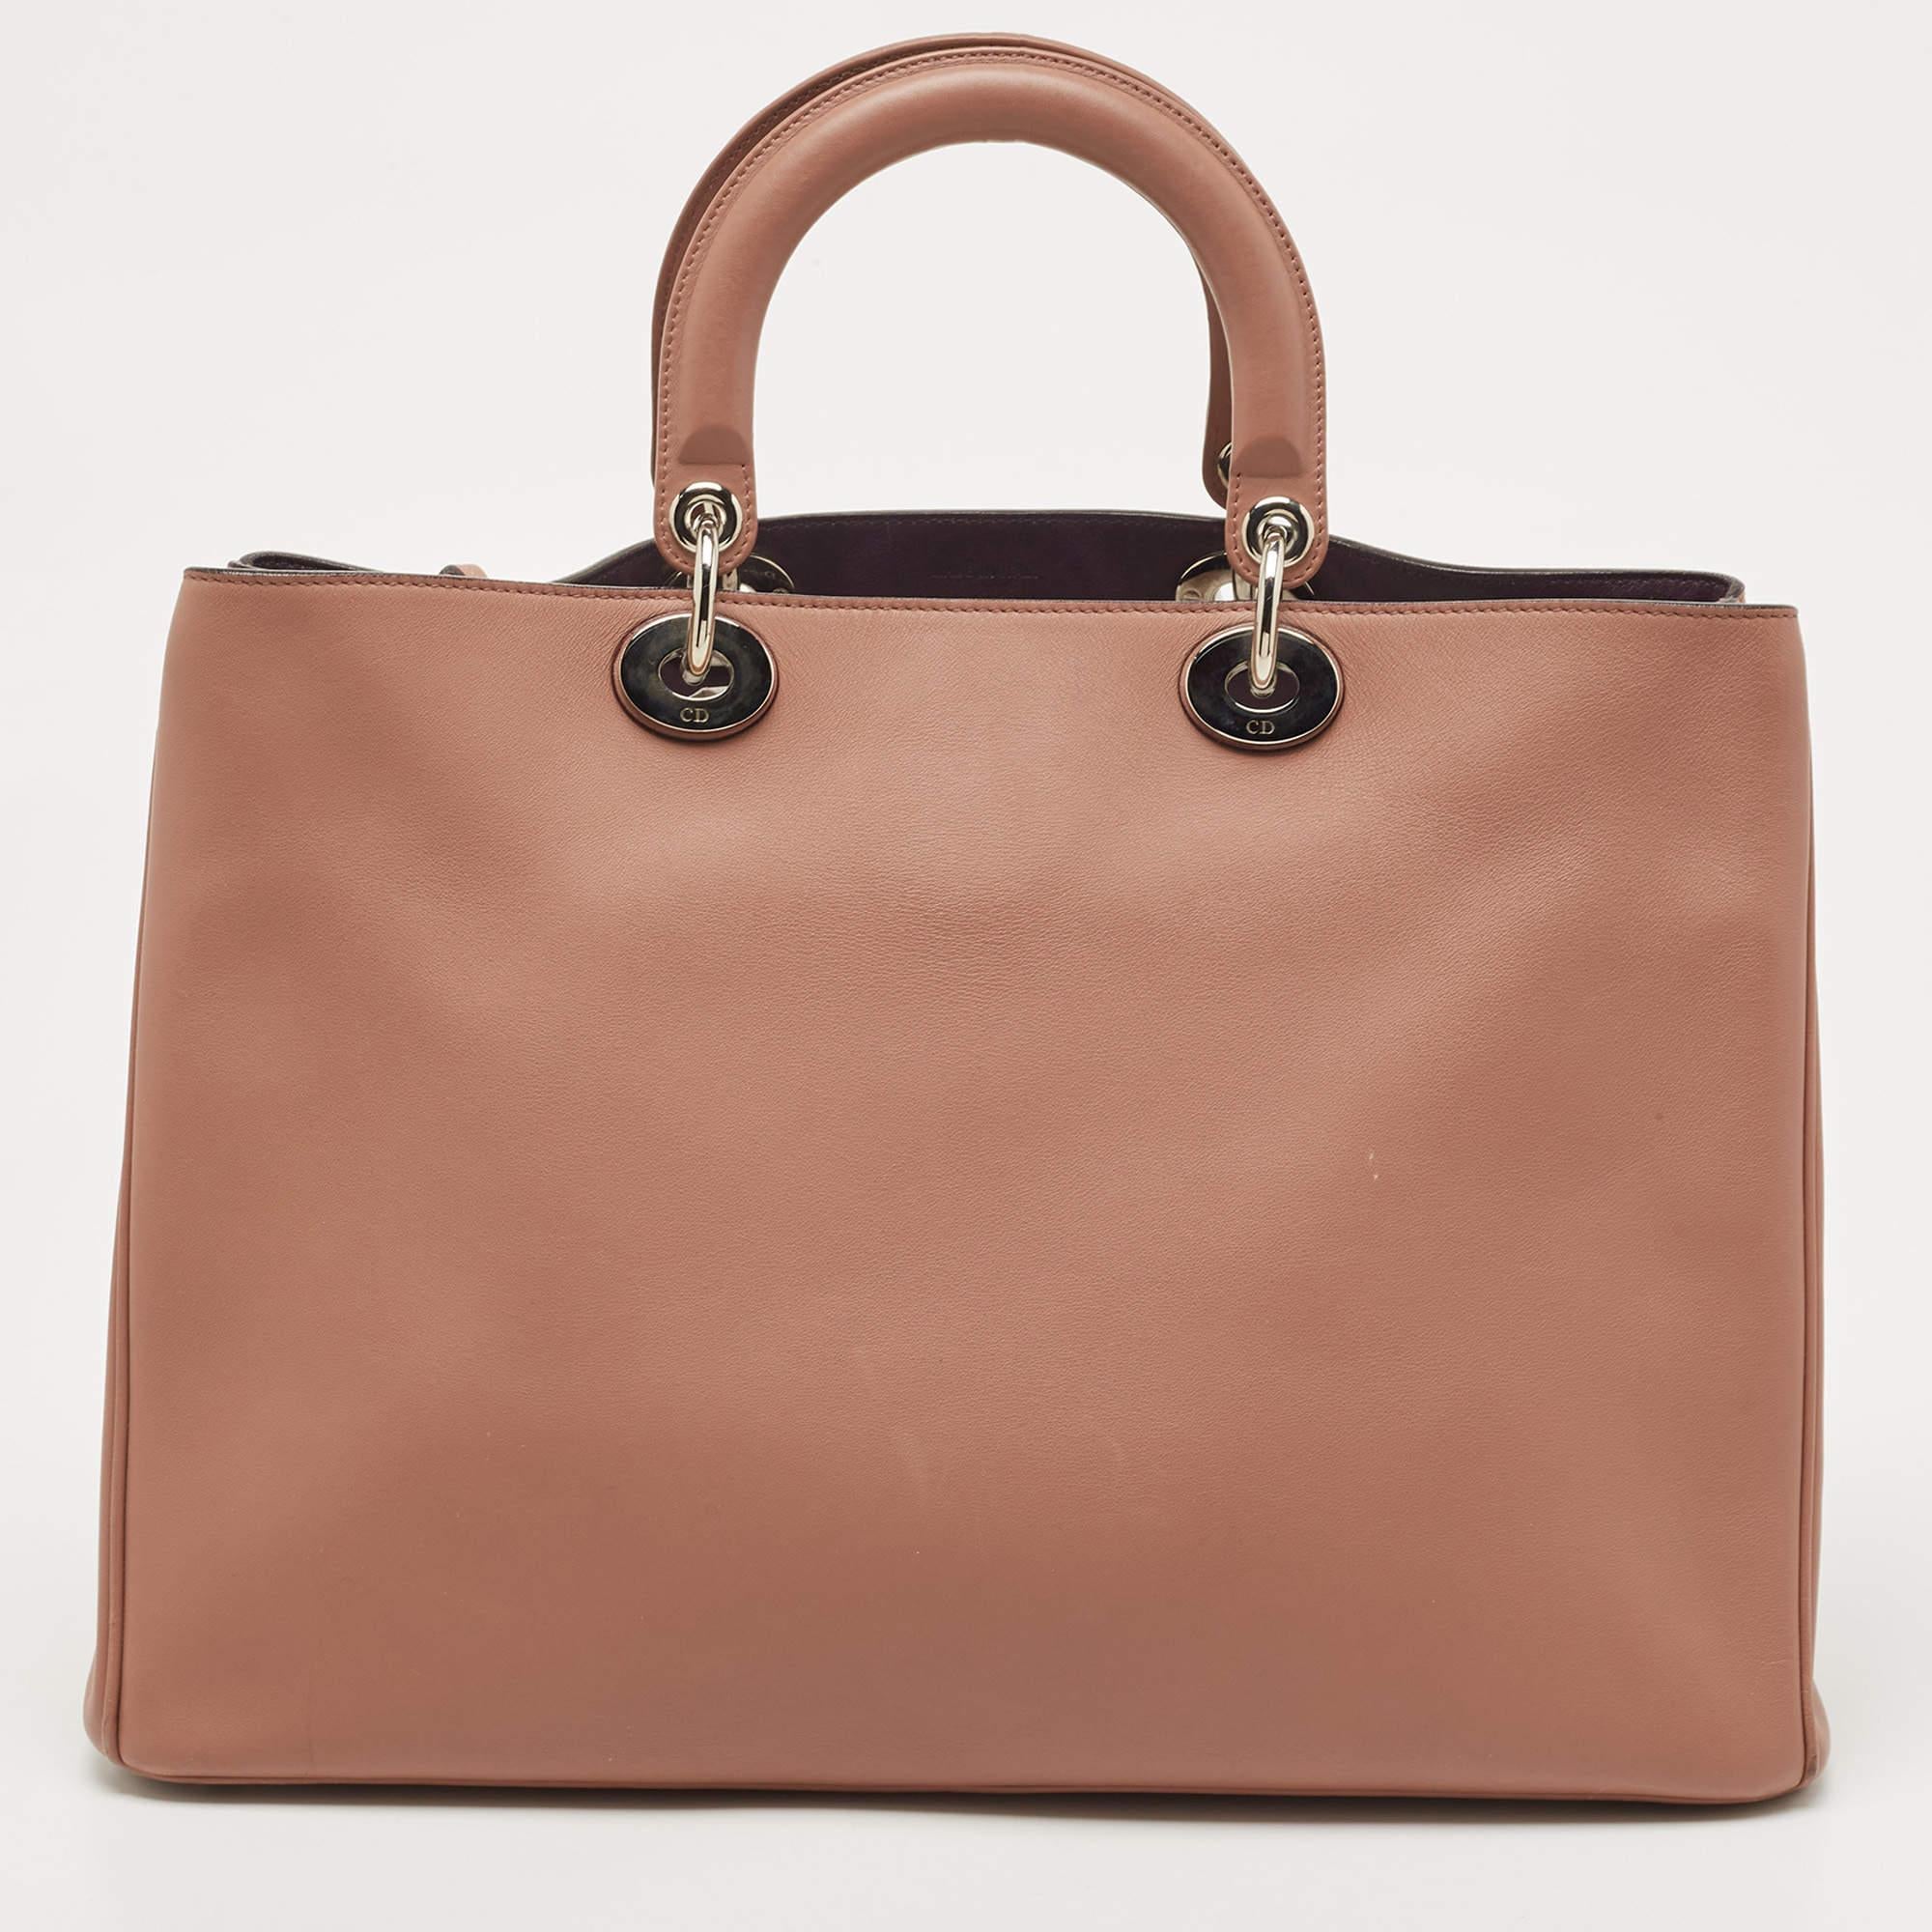 Ce sac Diorissimo Shopper de la Maison Dior vous permettra de ranger vos affaires en toute sécurité et avec style. L'extérieur est en cuir et le devant est orné de charmes D.I.O.R. Il est doté de deux poignées, d'une bandoulière et d'un intérieur